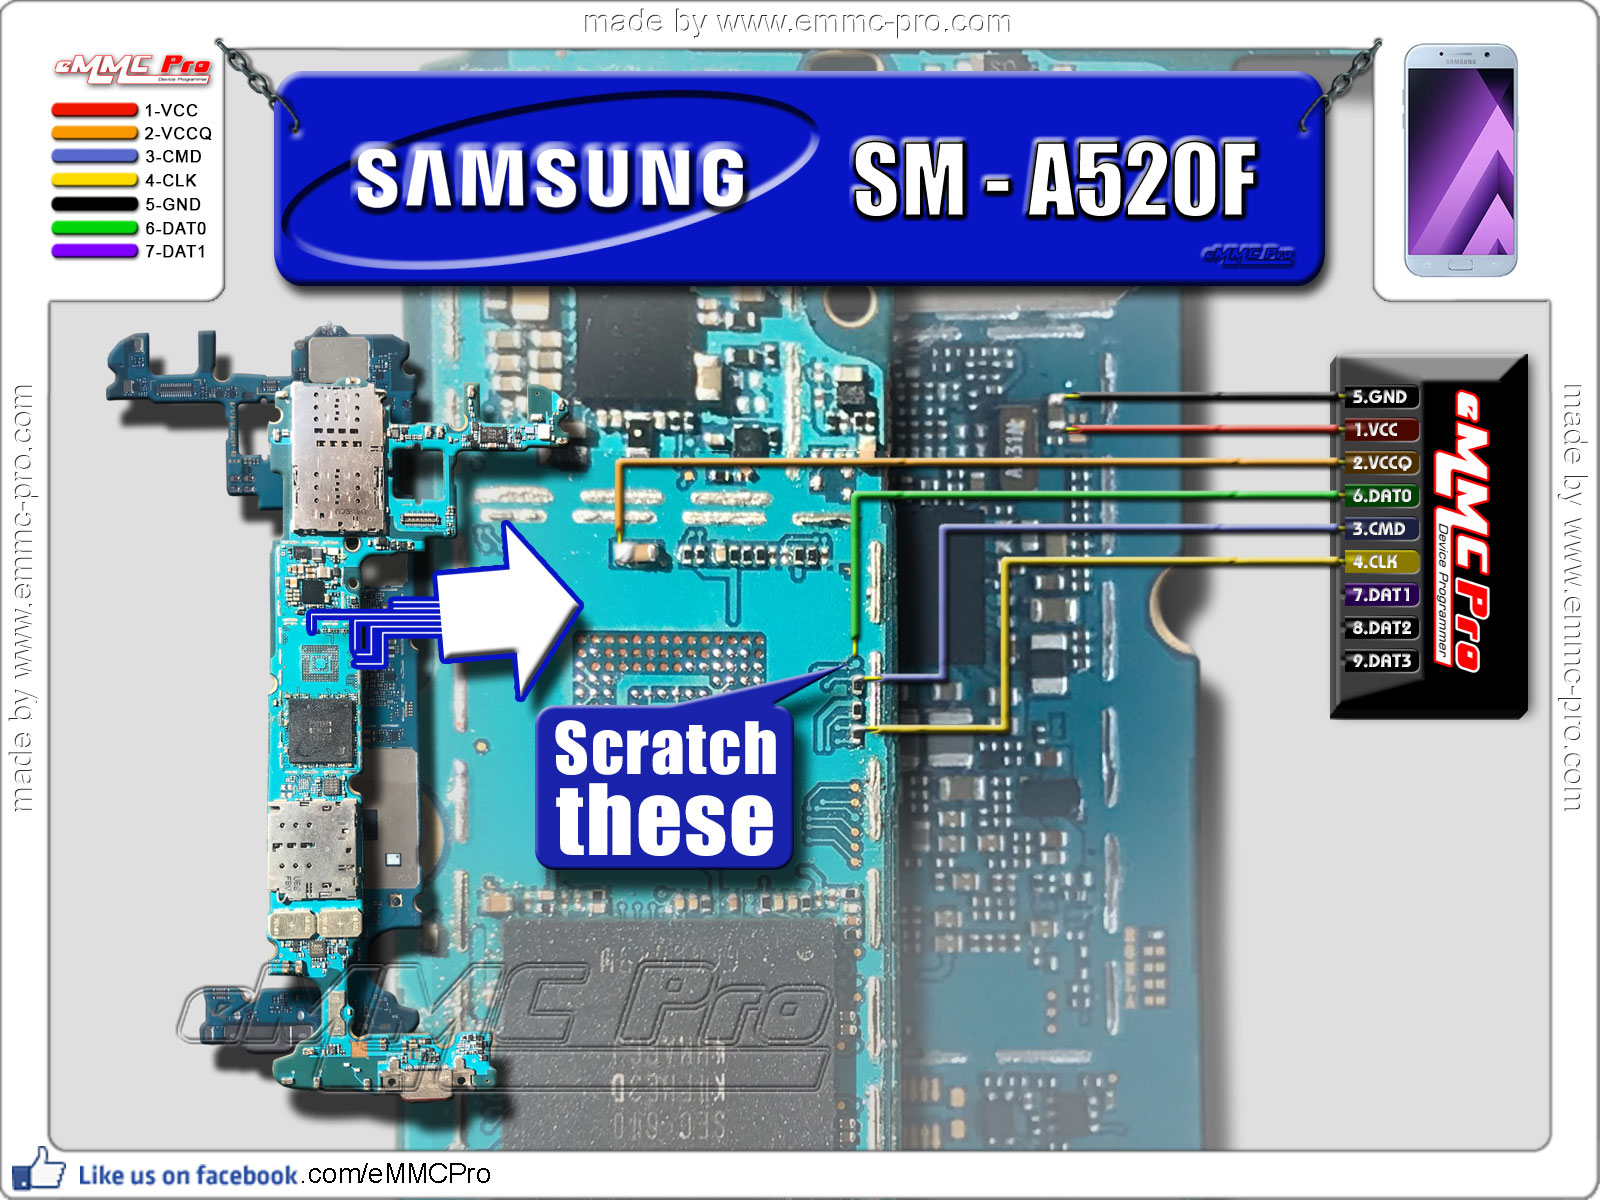 Samsung A50 Разъем Зарядки